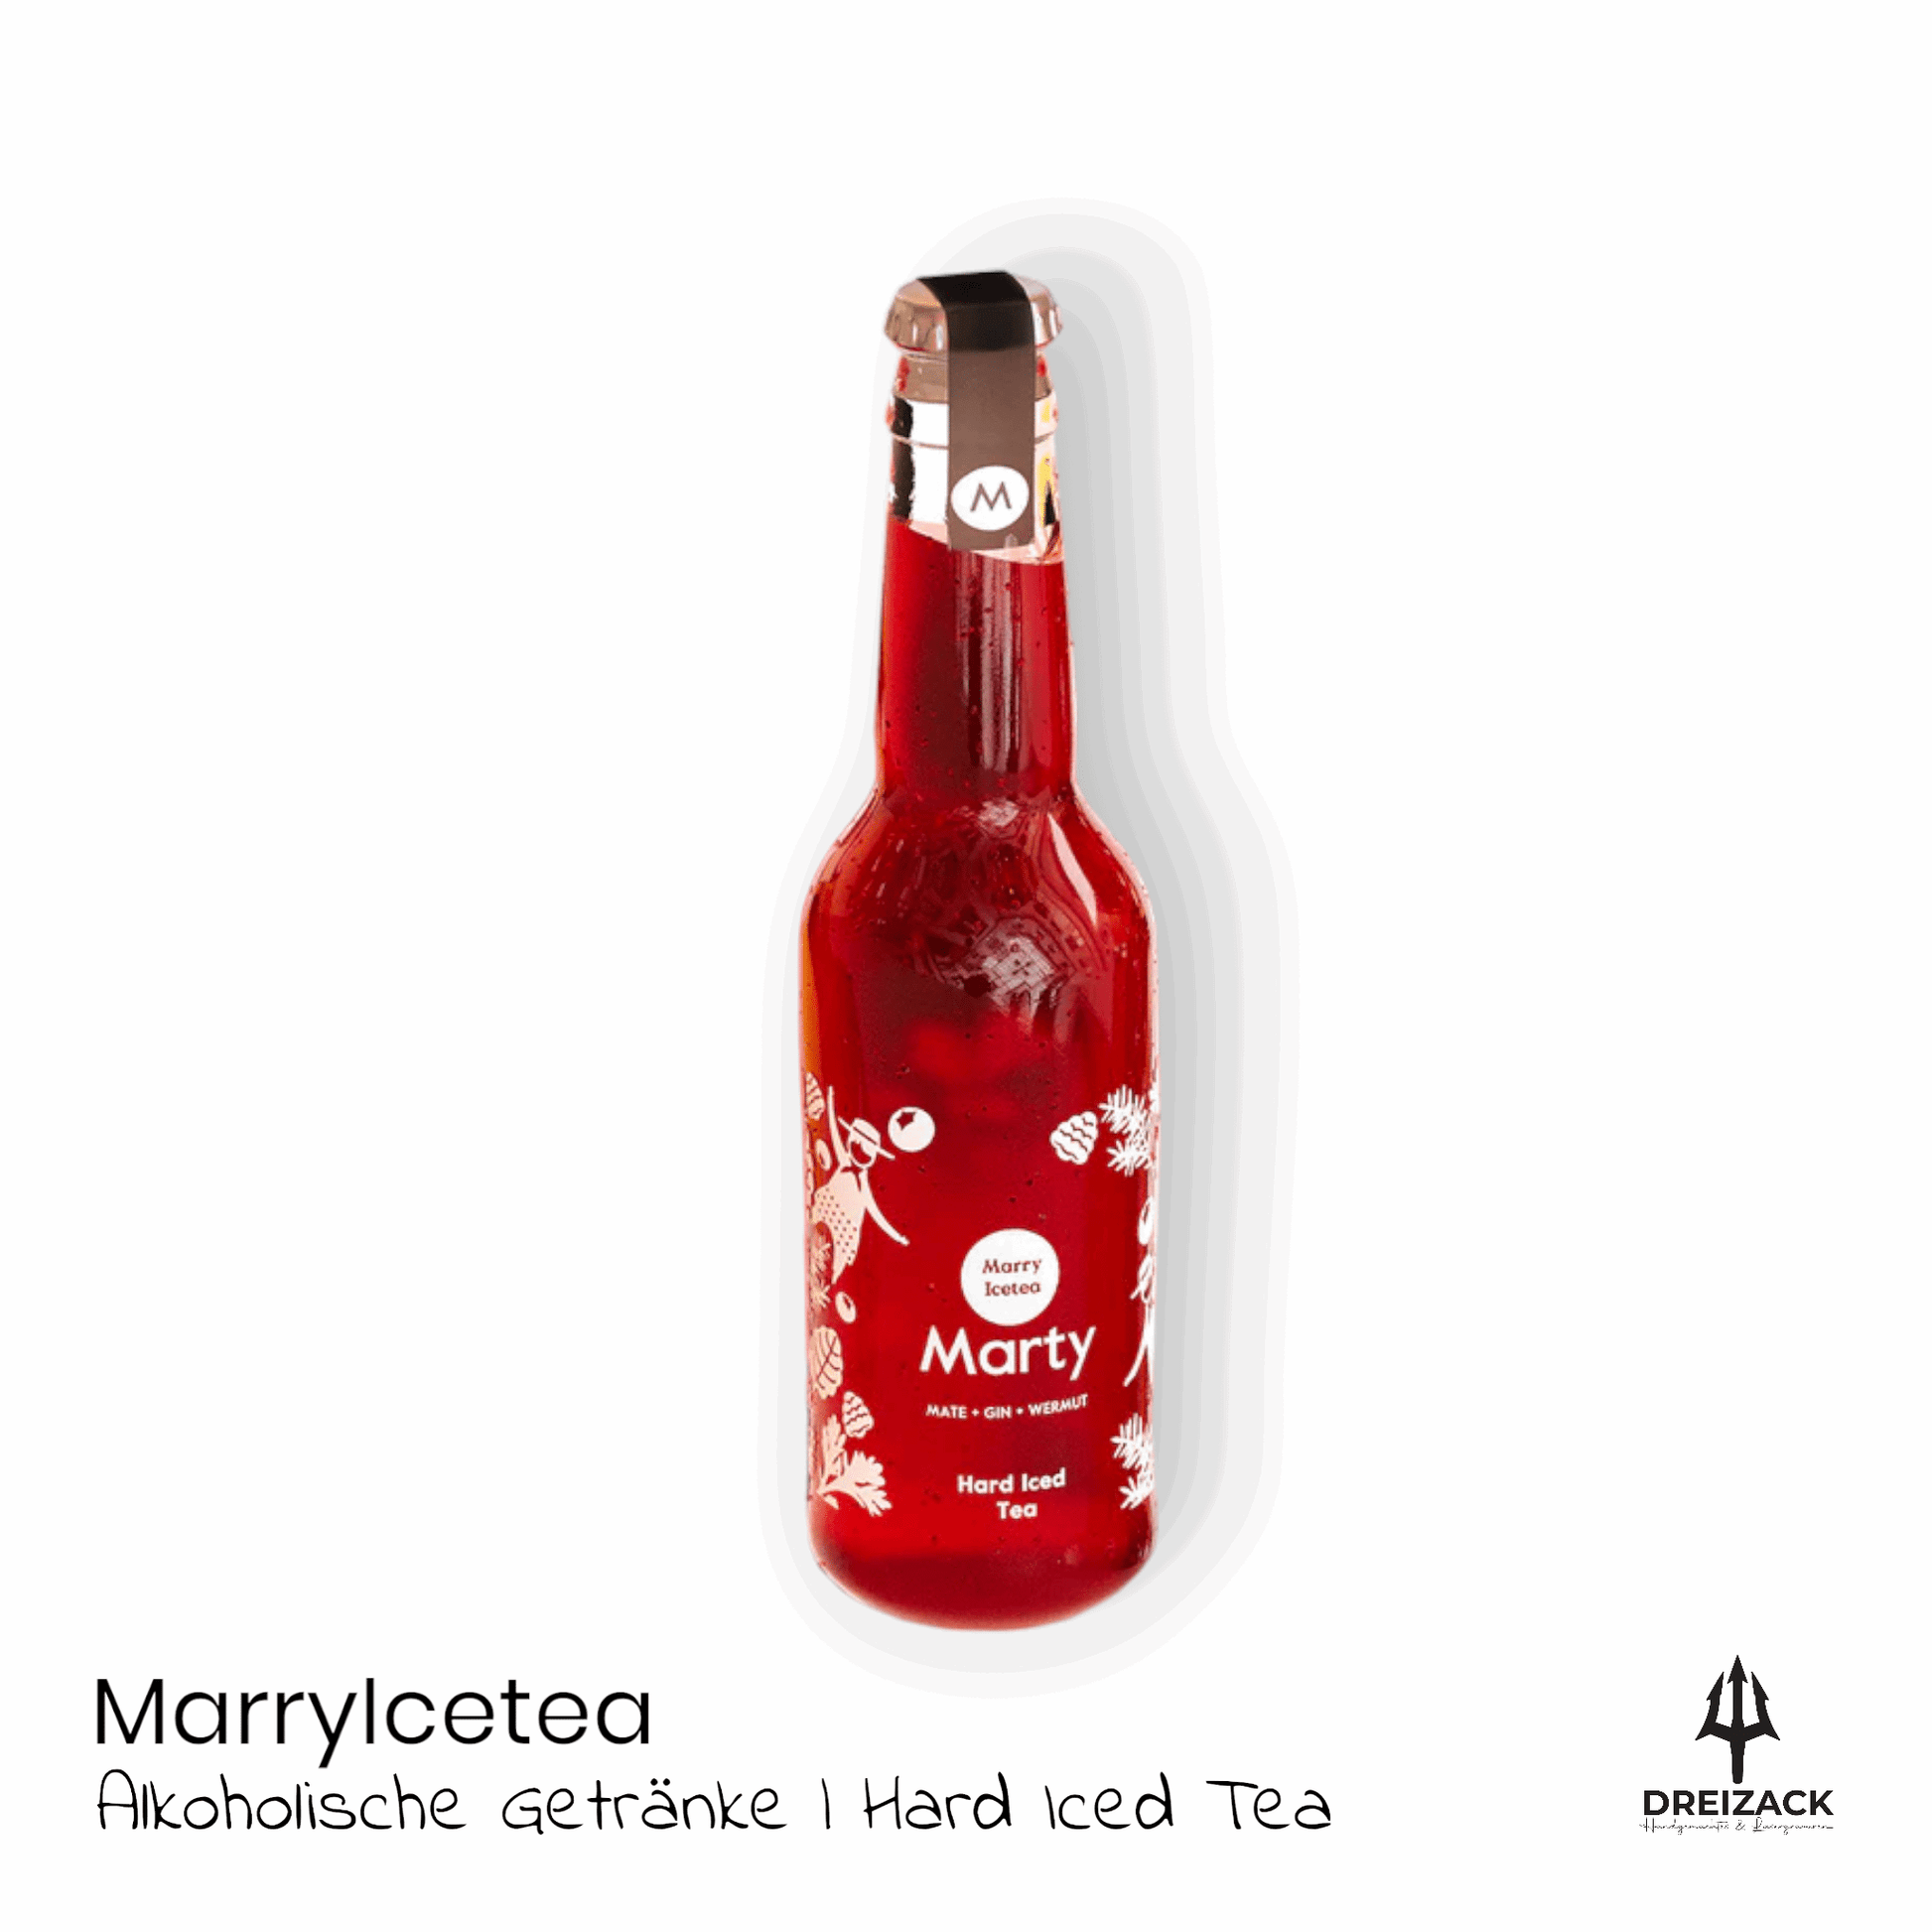 Marty | Hard Iced Tea von MarryIcetea – Der schneidige Strahlemann Alkoholische Getränke MarryIcetea oesterreich handgemachte geschenke in wien